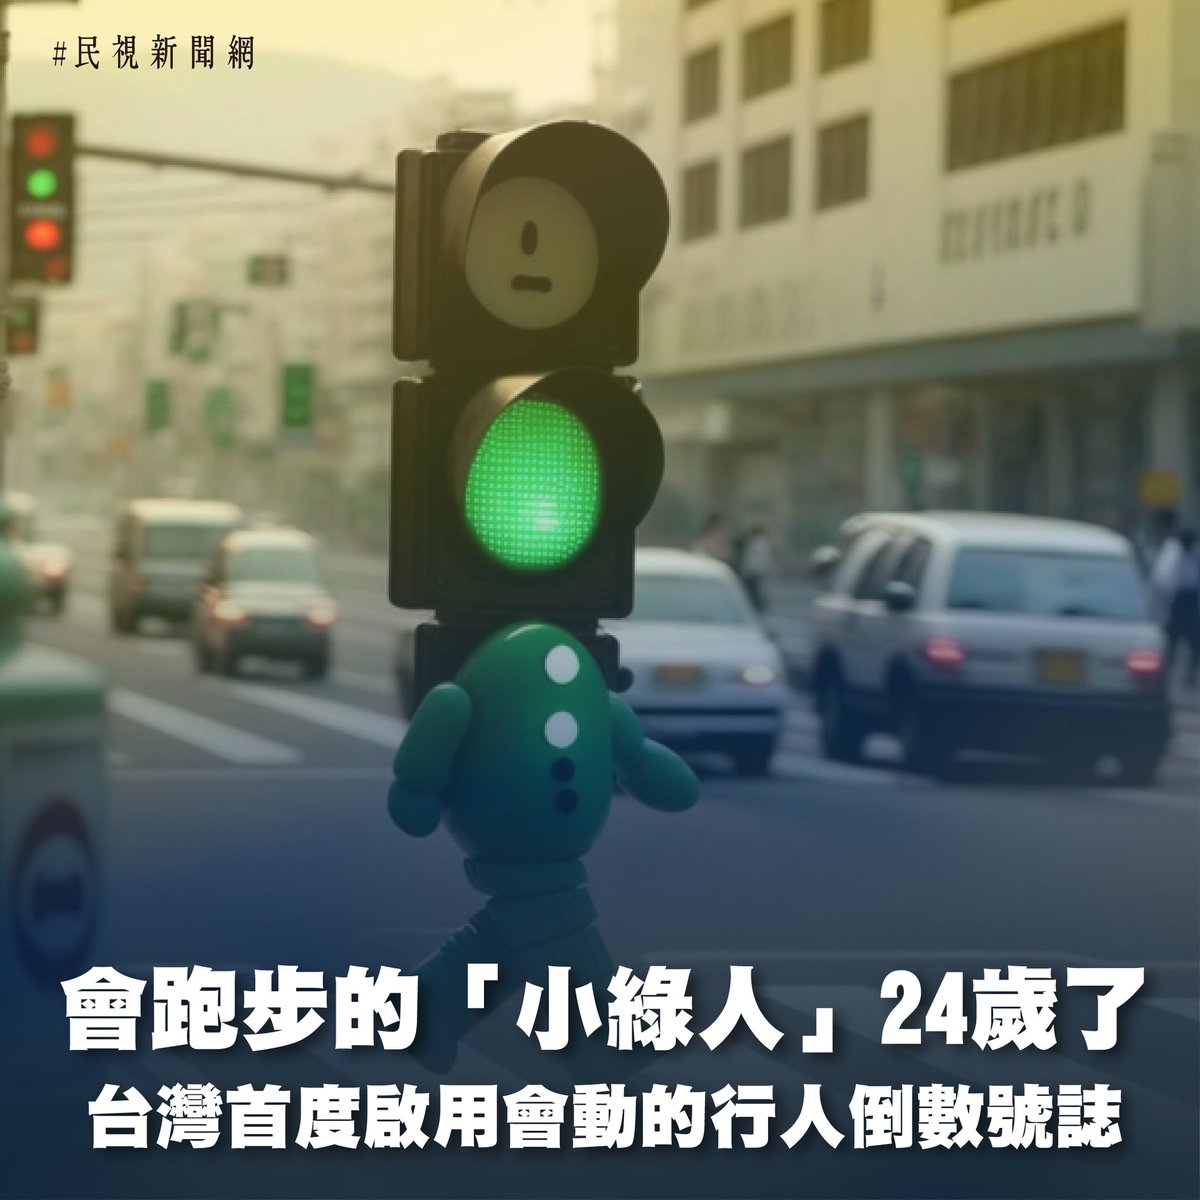 【會跑步的 24歲了🚦】 作為台灣標誌性的行人號誌，小綠人已經守護了我們24年了👍 🕶 1999/3/18，全世界第一盞動畫式行人專用號誌，被設立在台北市的松壽路和市府路口。 友善的微笑和熱情的姿態，幫助引導數不清的行人安全穿越繁忙的路口，甚至有國外旅客專